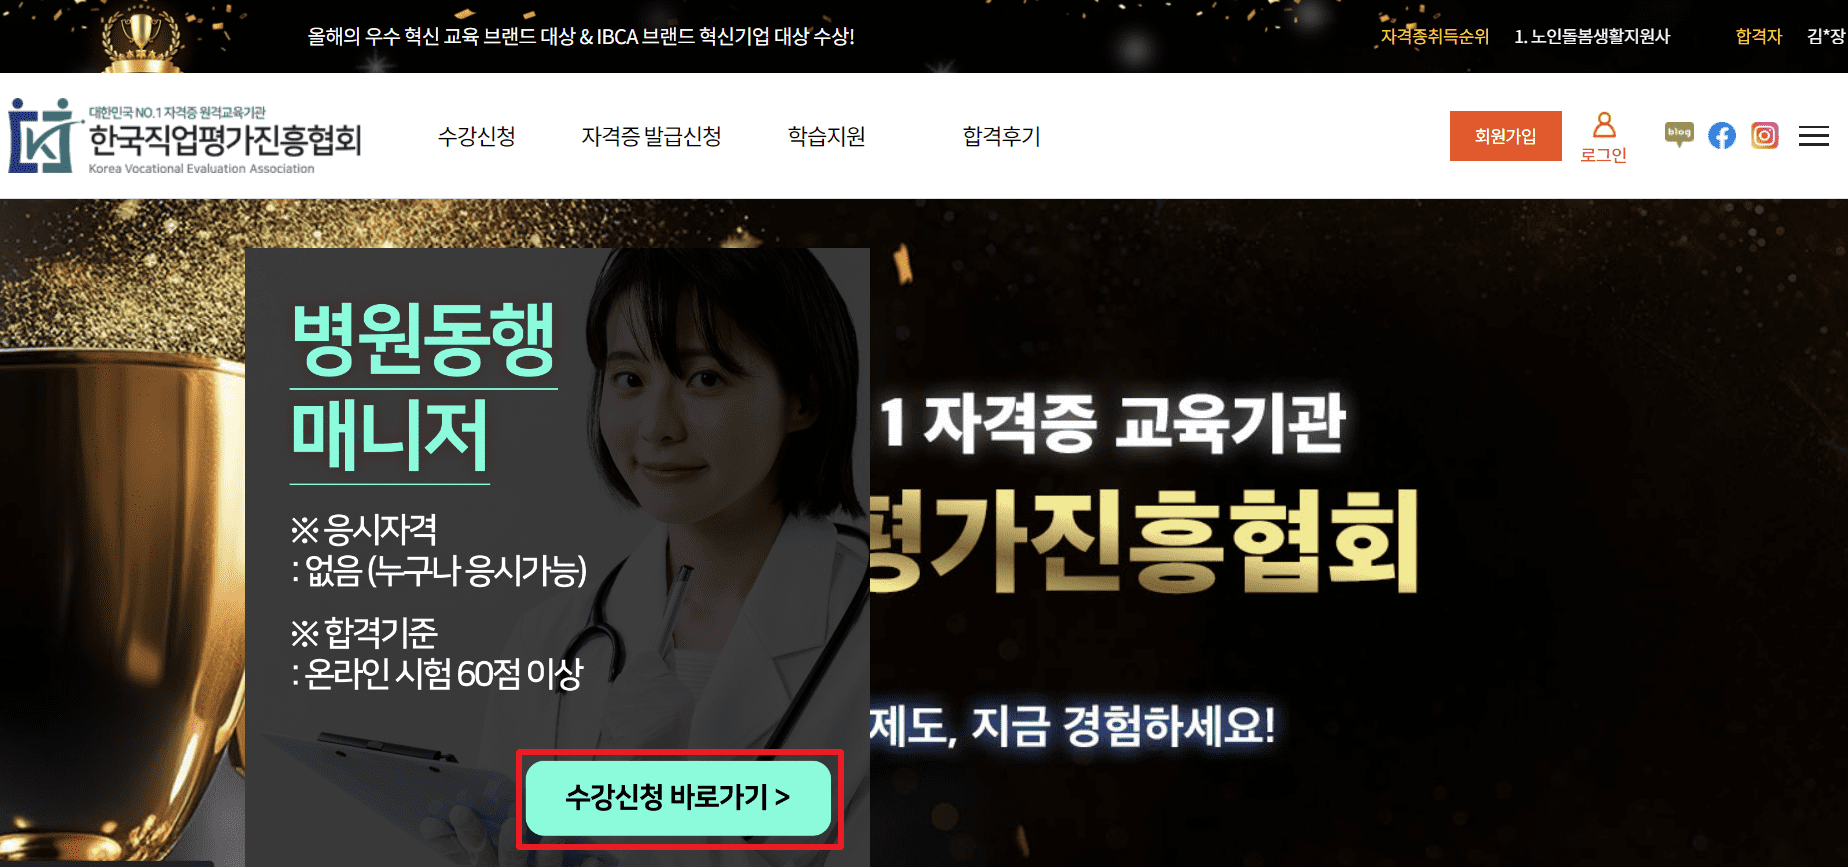 한국자격금정평가진흥원-병원동행매니저-무료수강신청방법